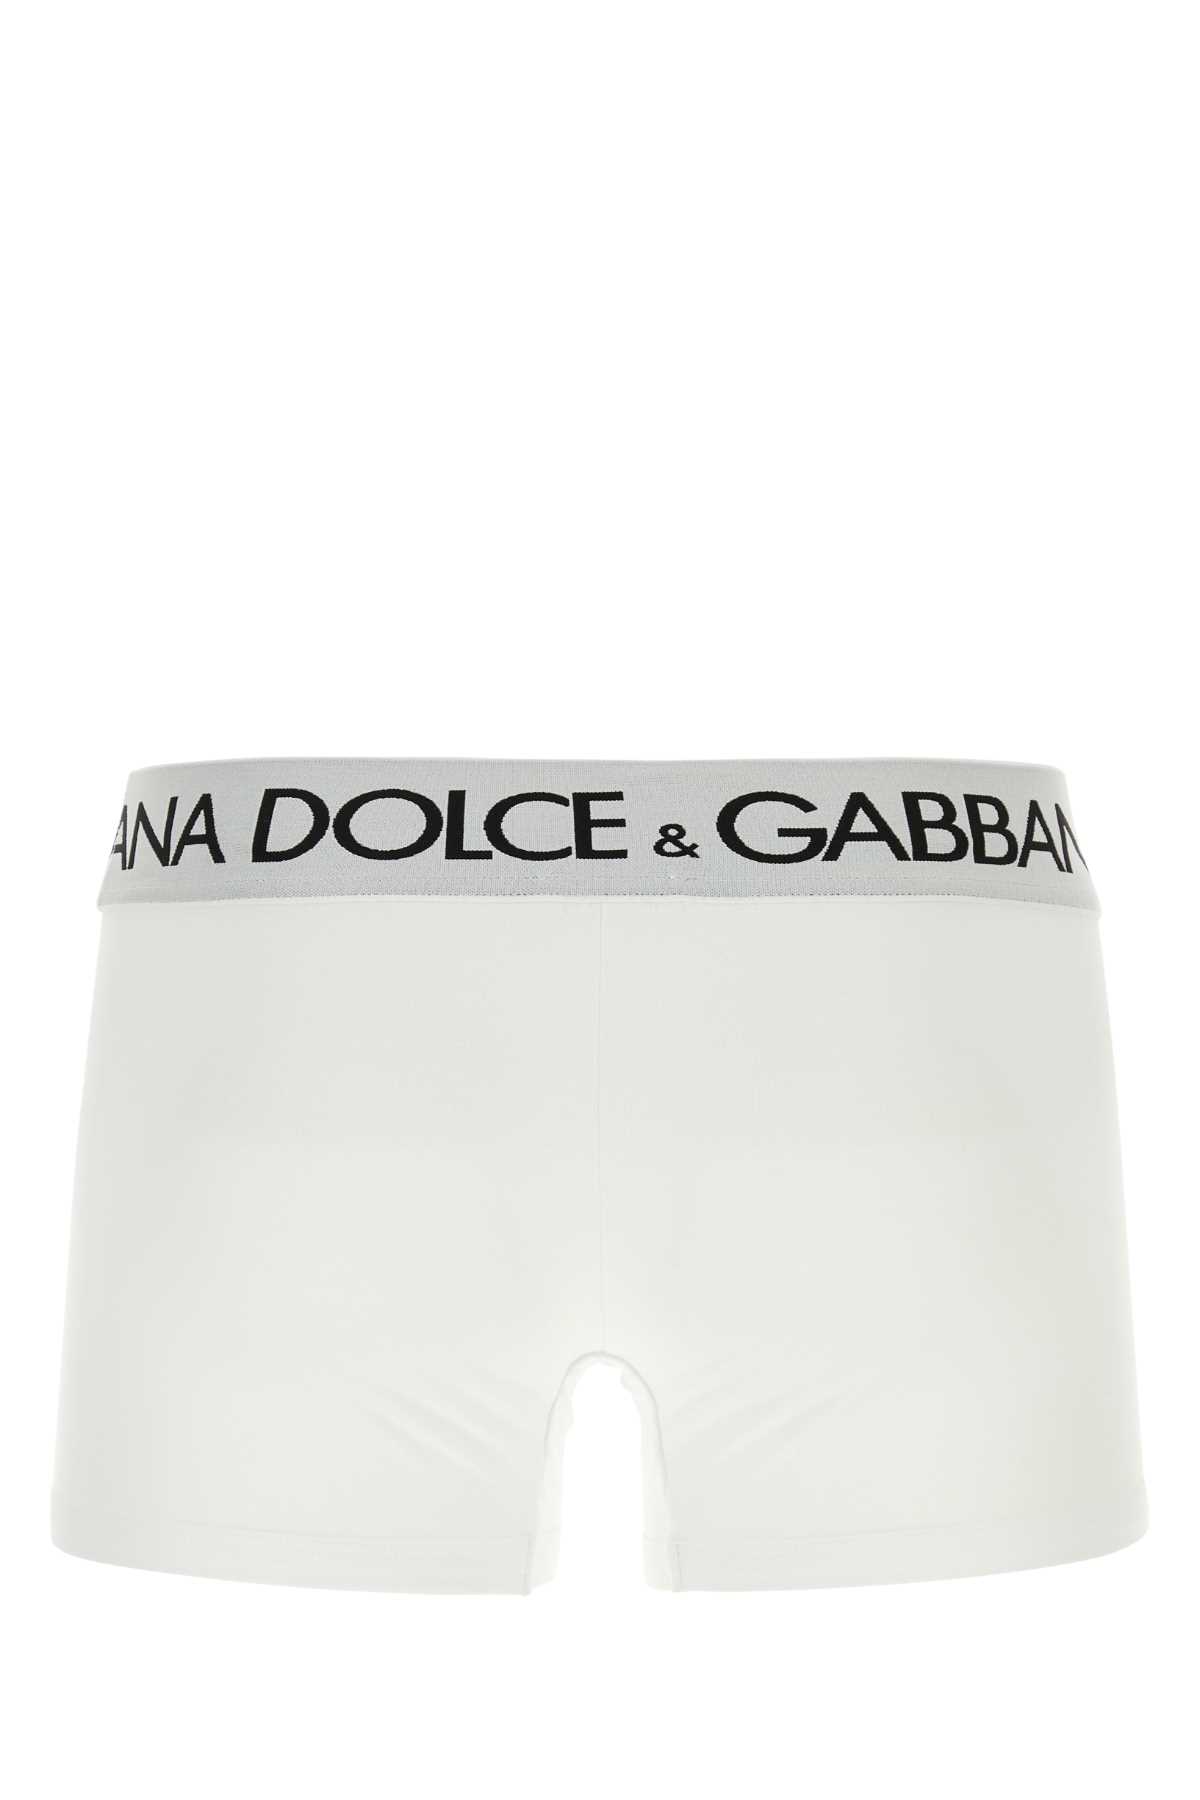 Shop Dolce & Gabbana White Stretch Cotton Boxer Set